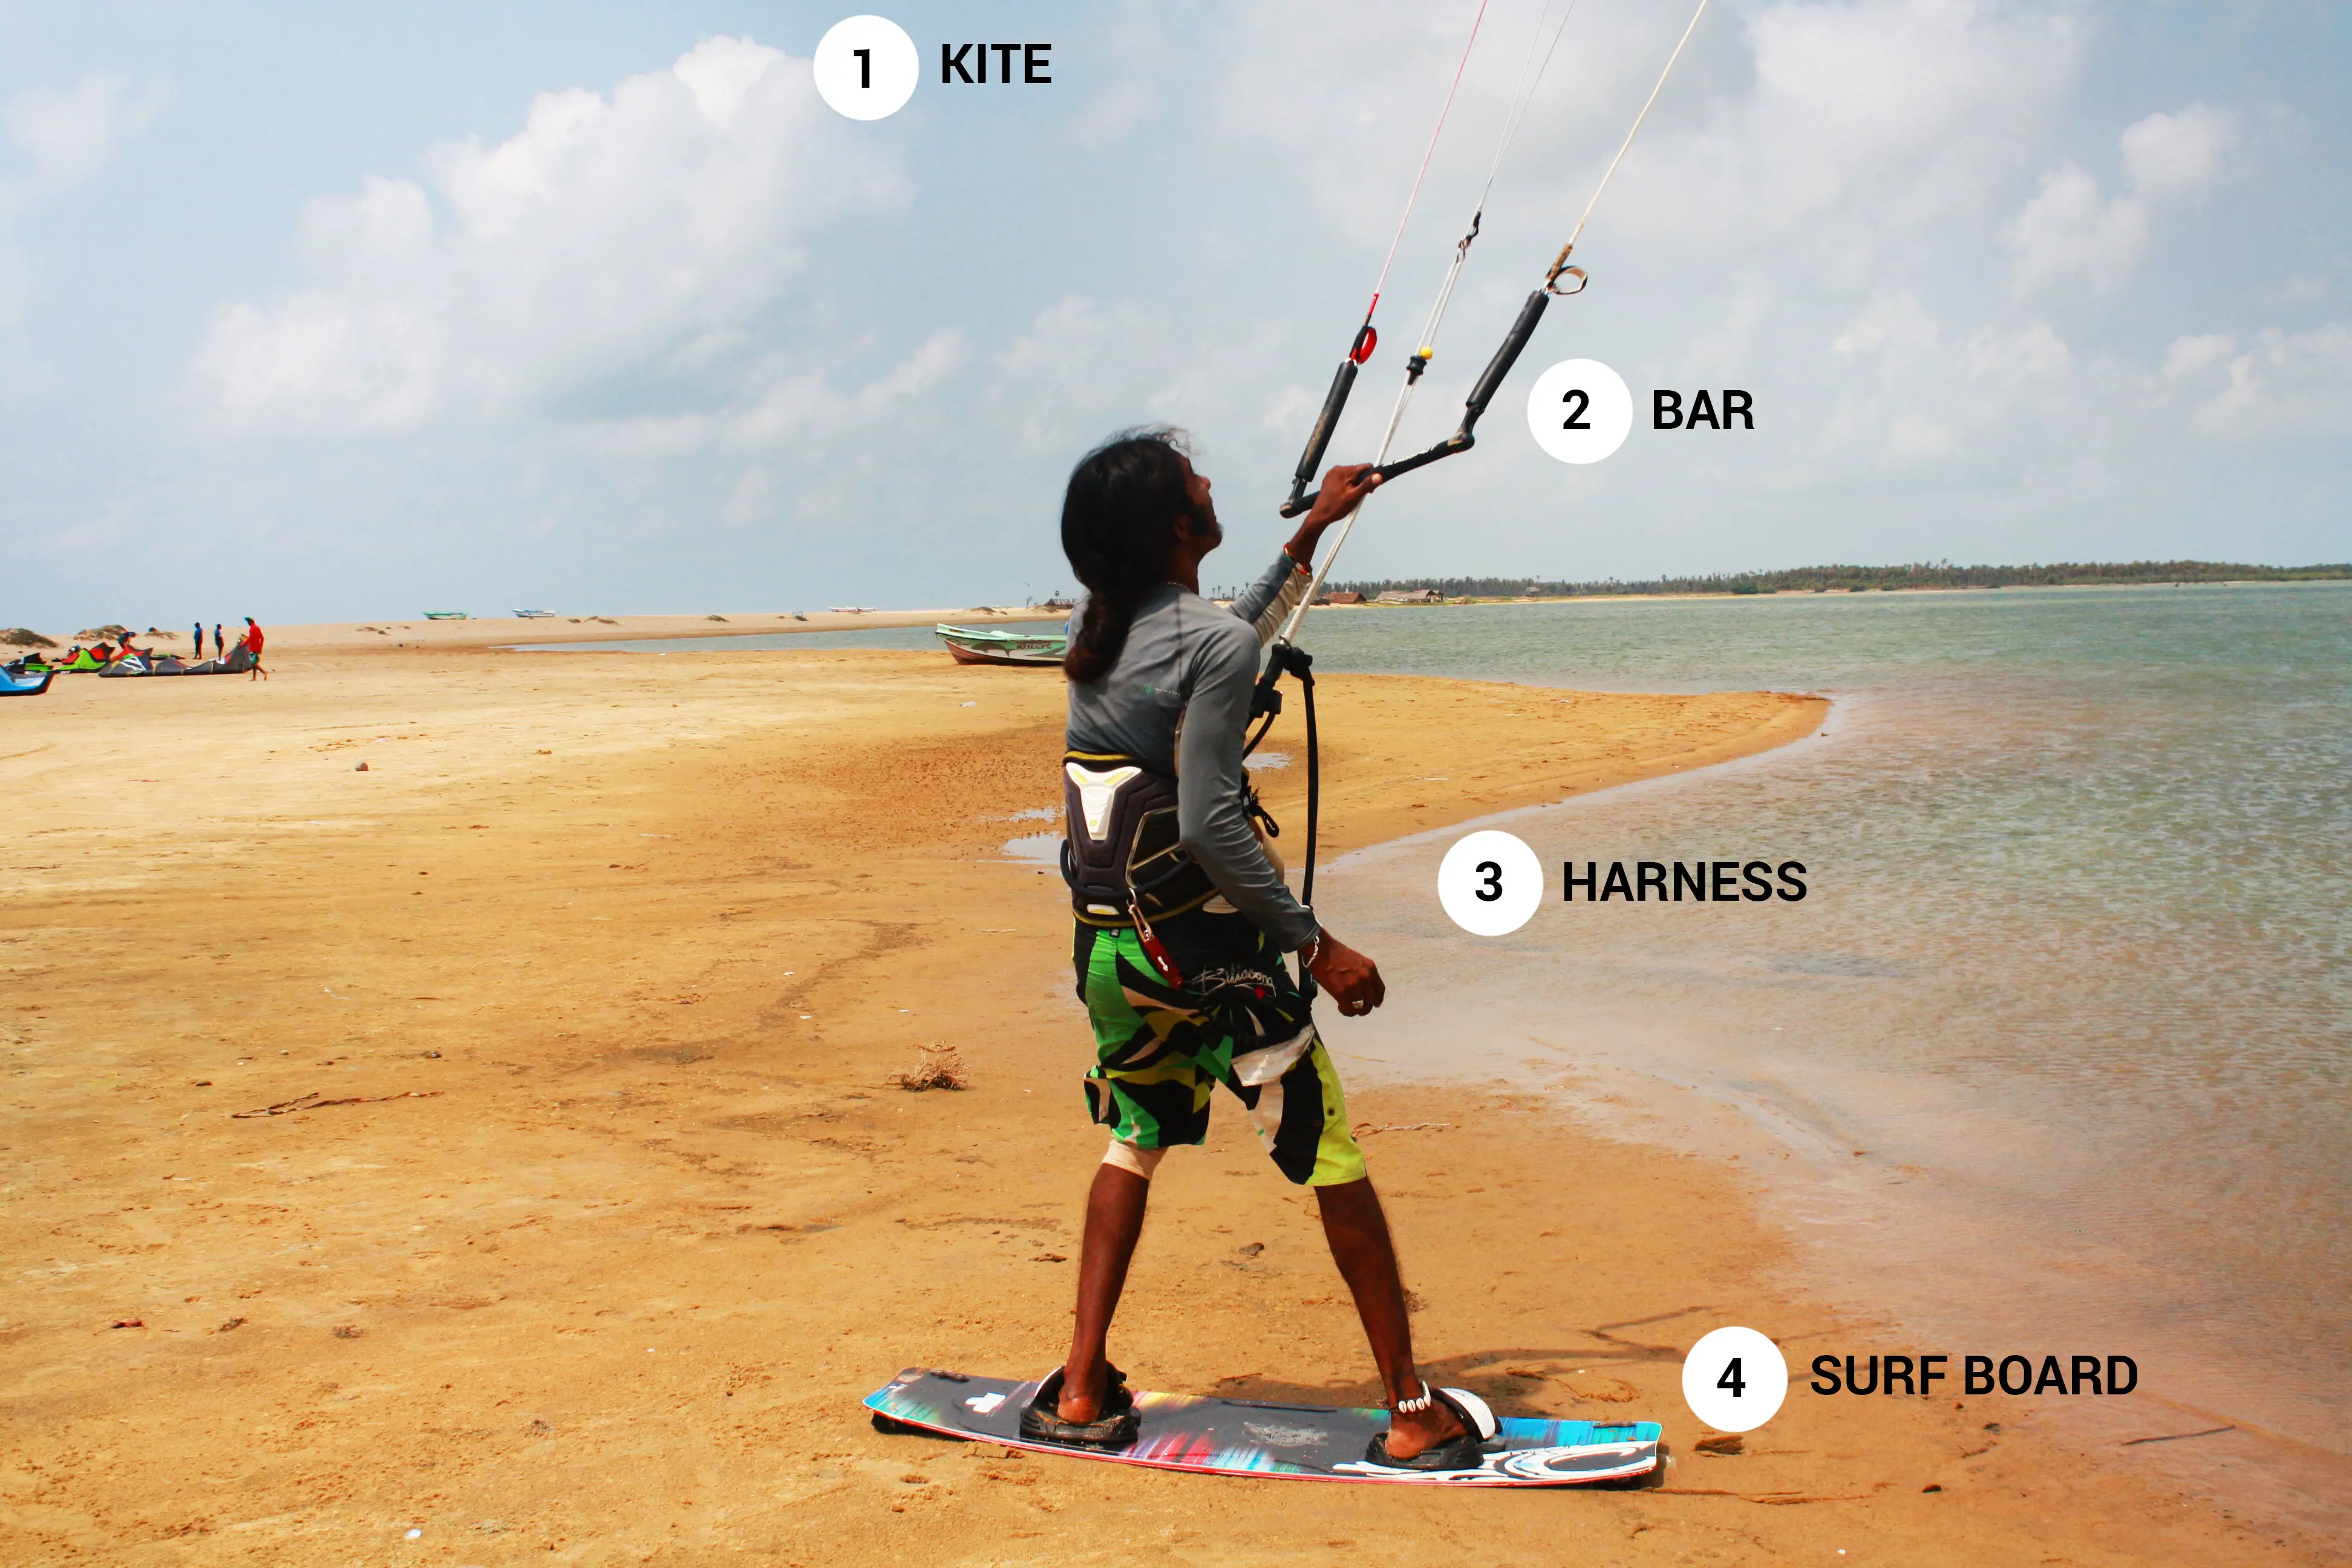 kite surfing kit